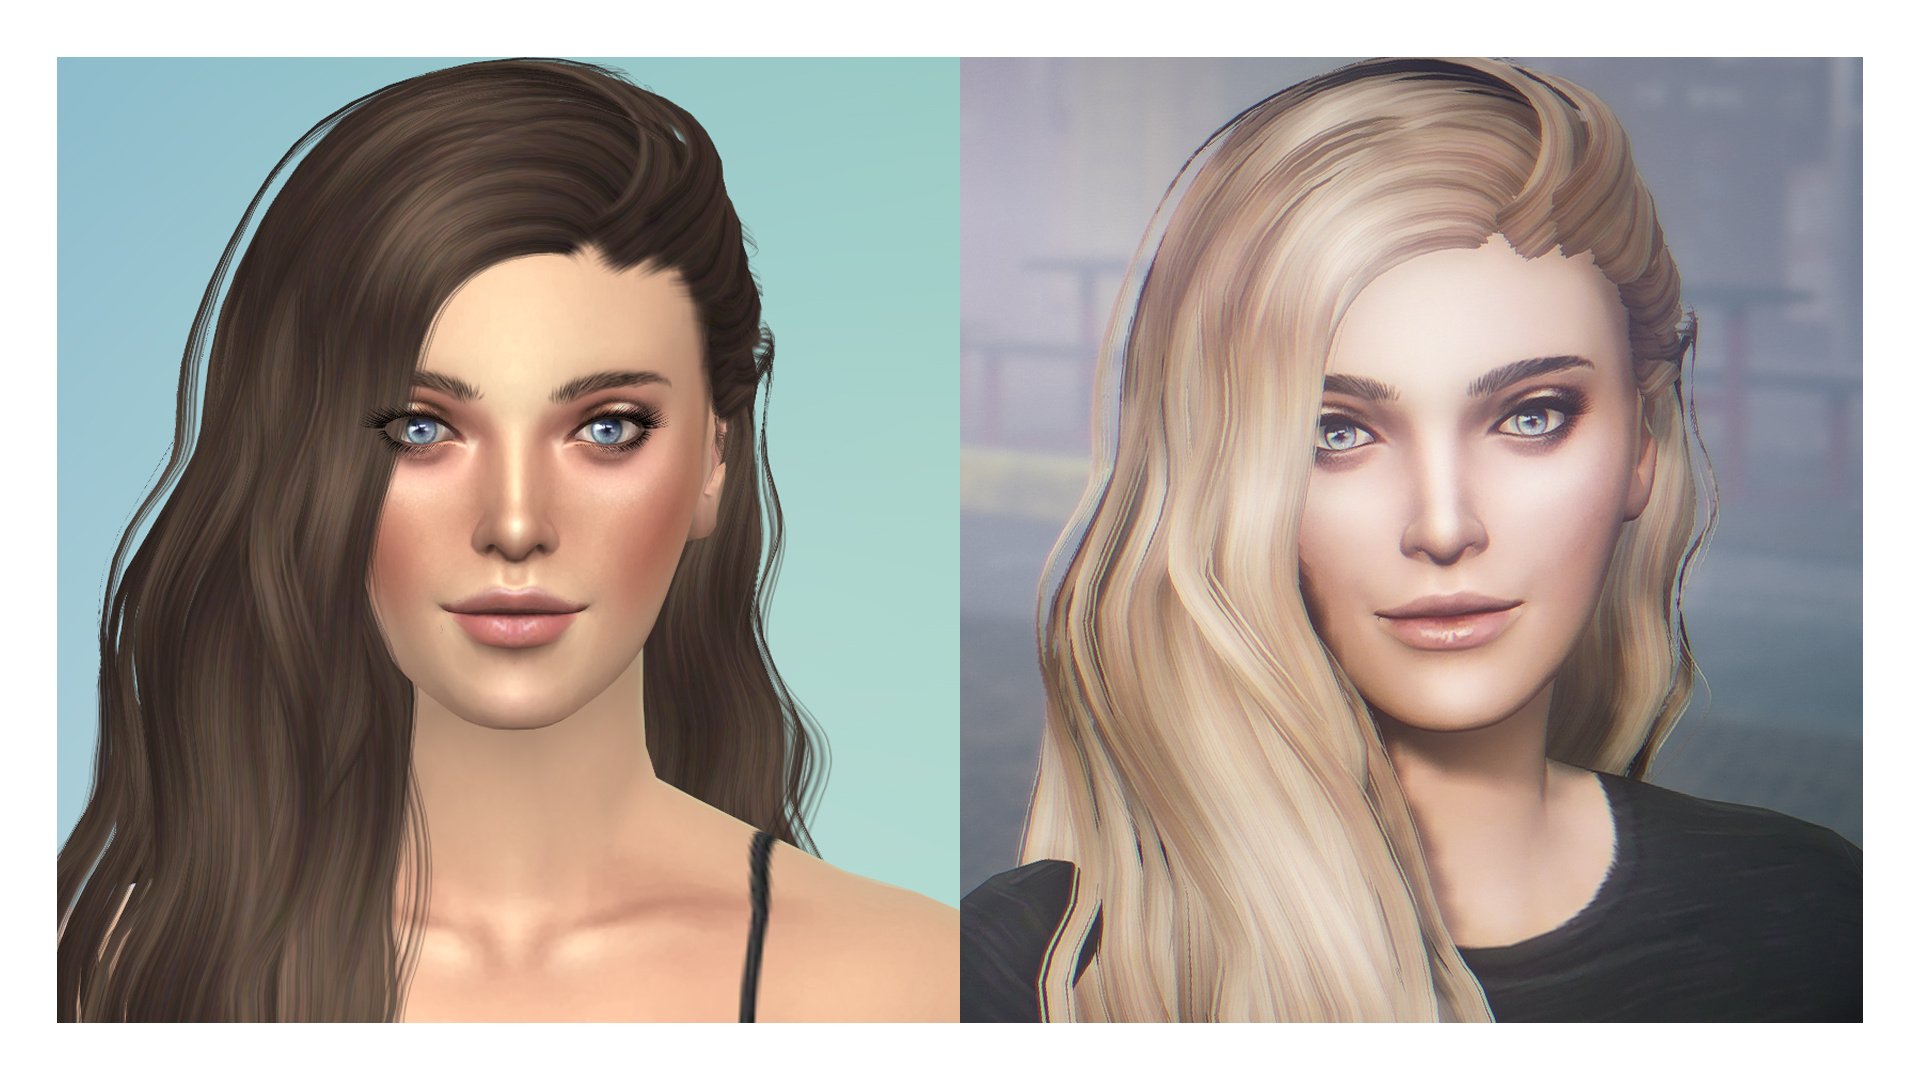 Sims Females